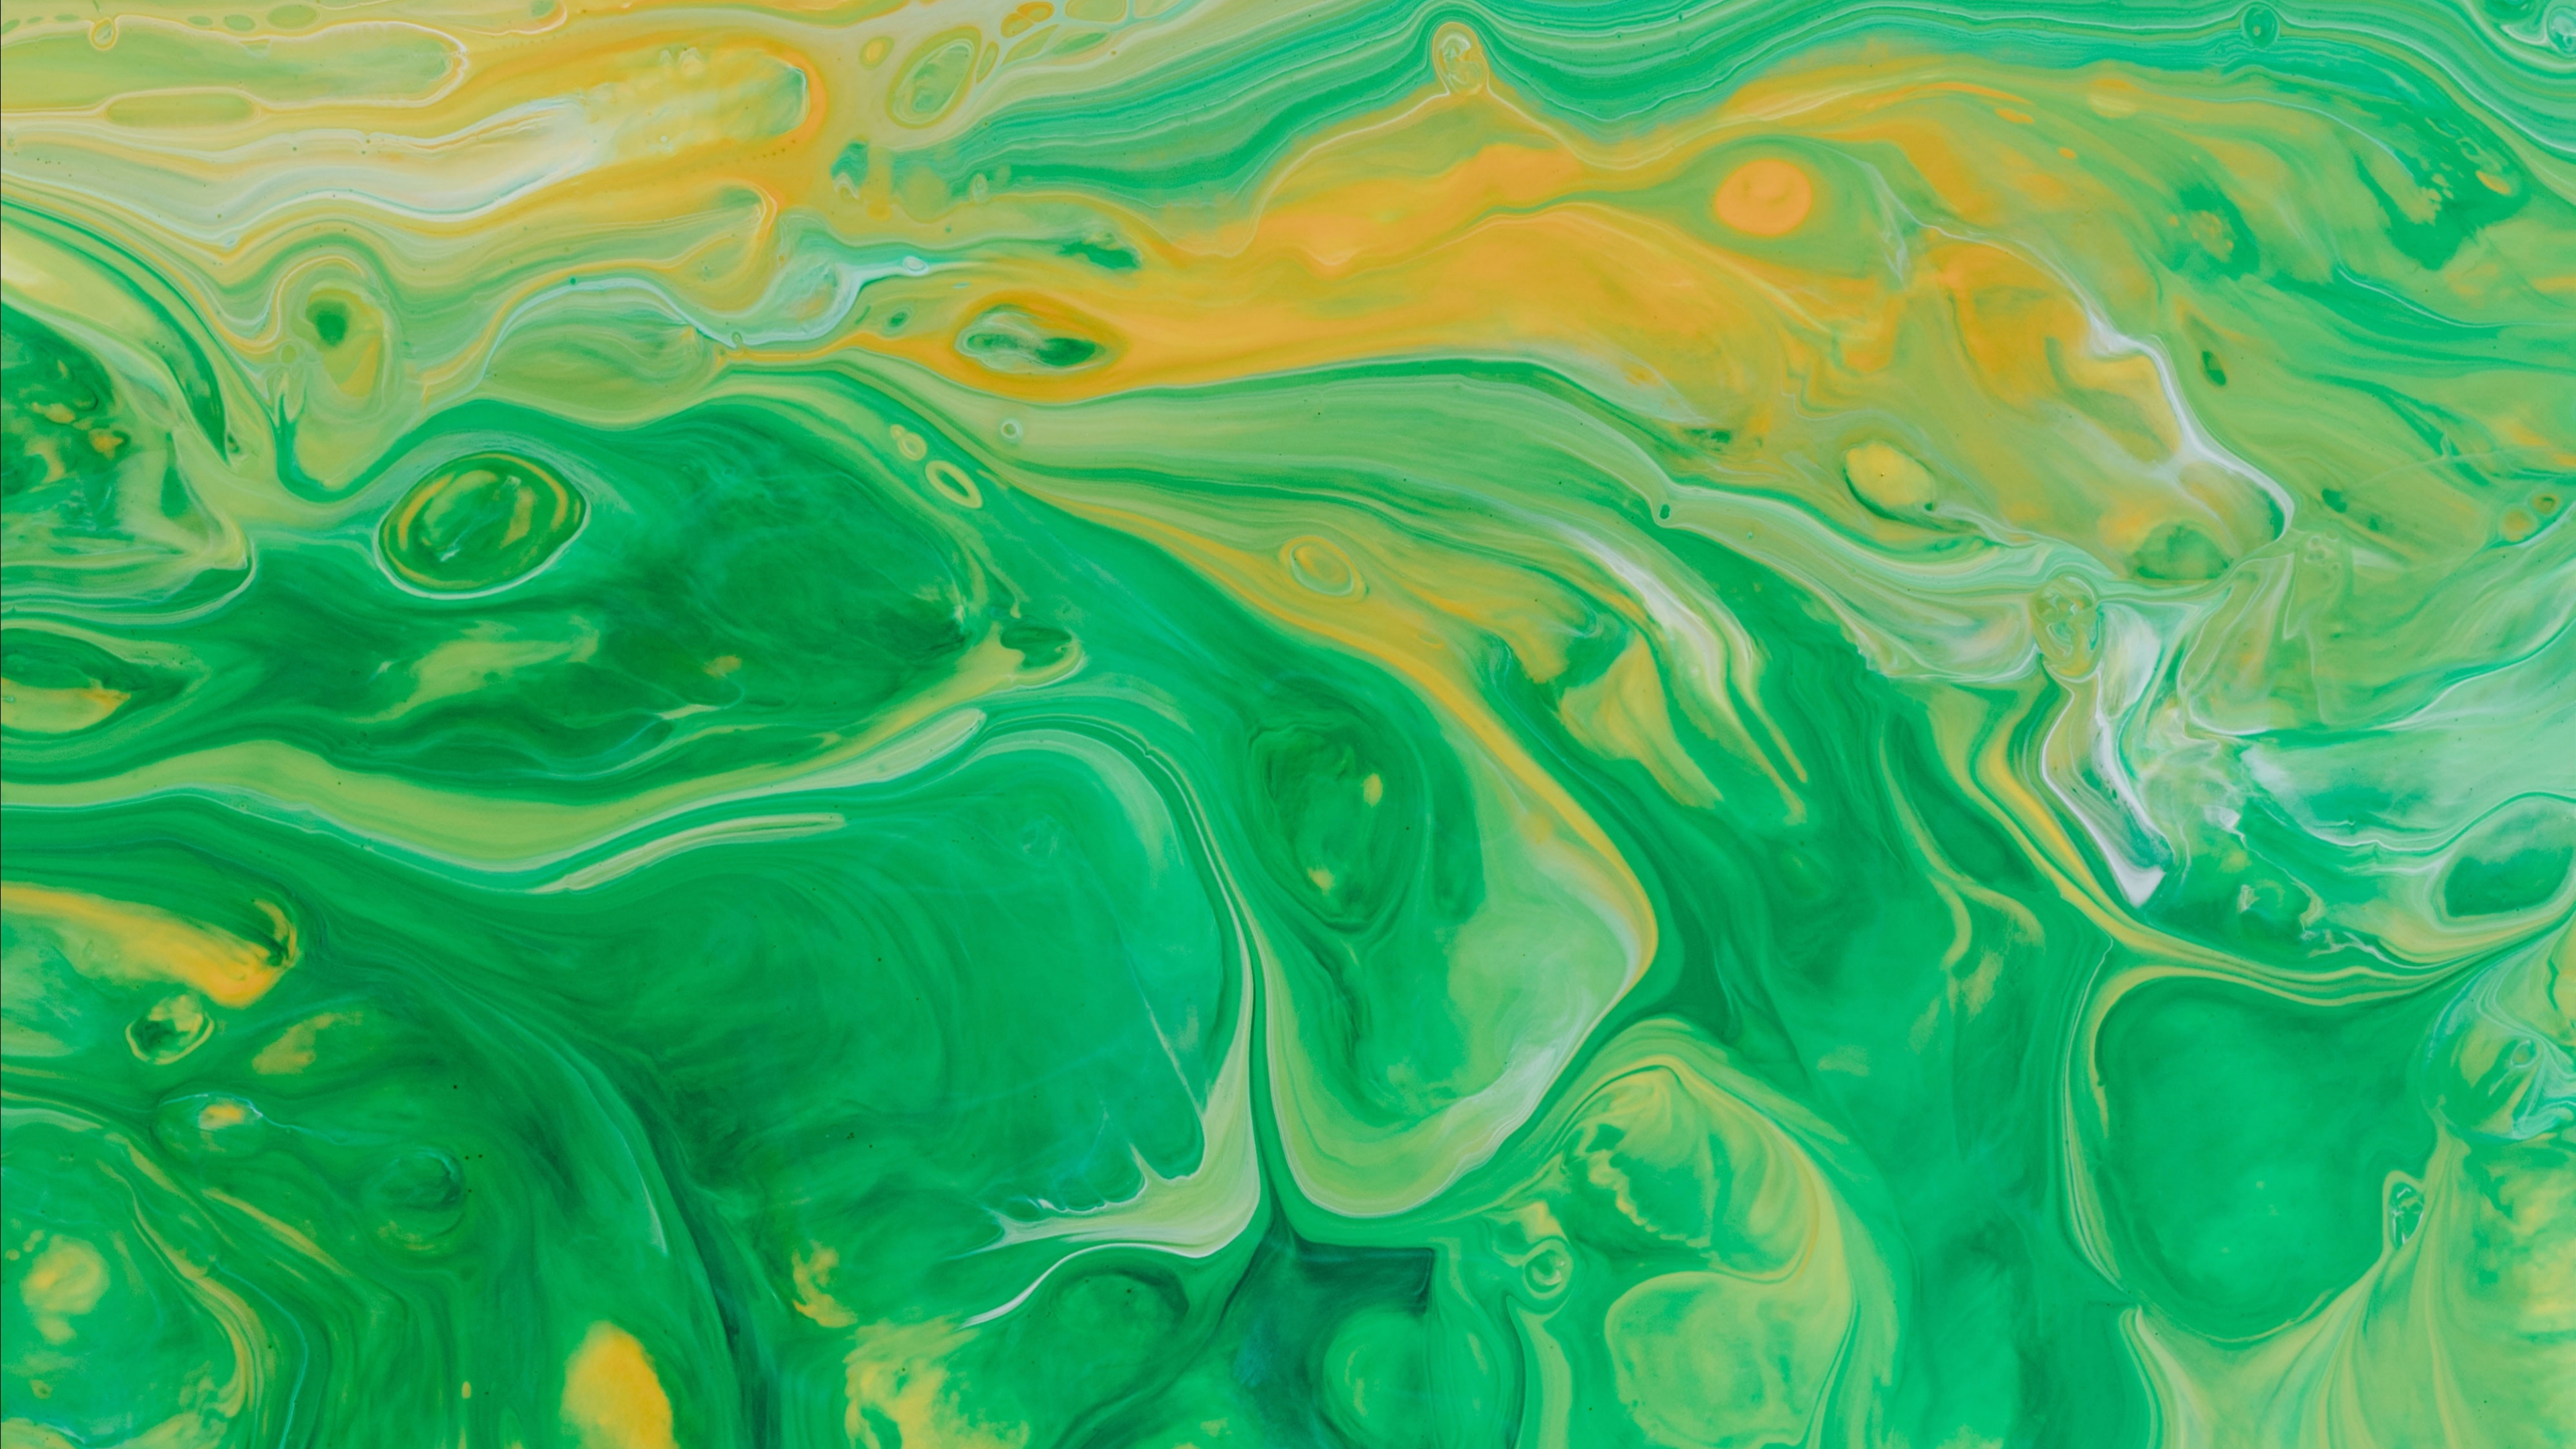 丙烯酸涂料, 水彩画, 绿色的, 艺术, 视觉艺术 壁纸 3840x2160 允许